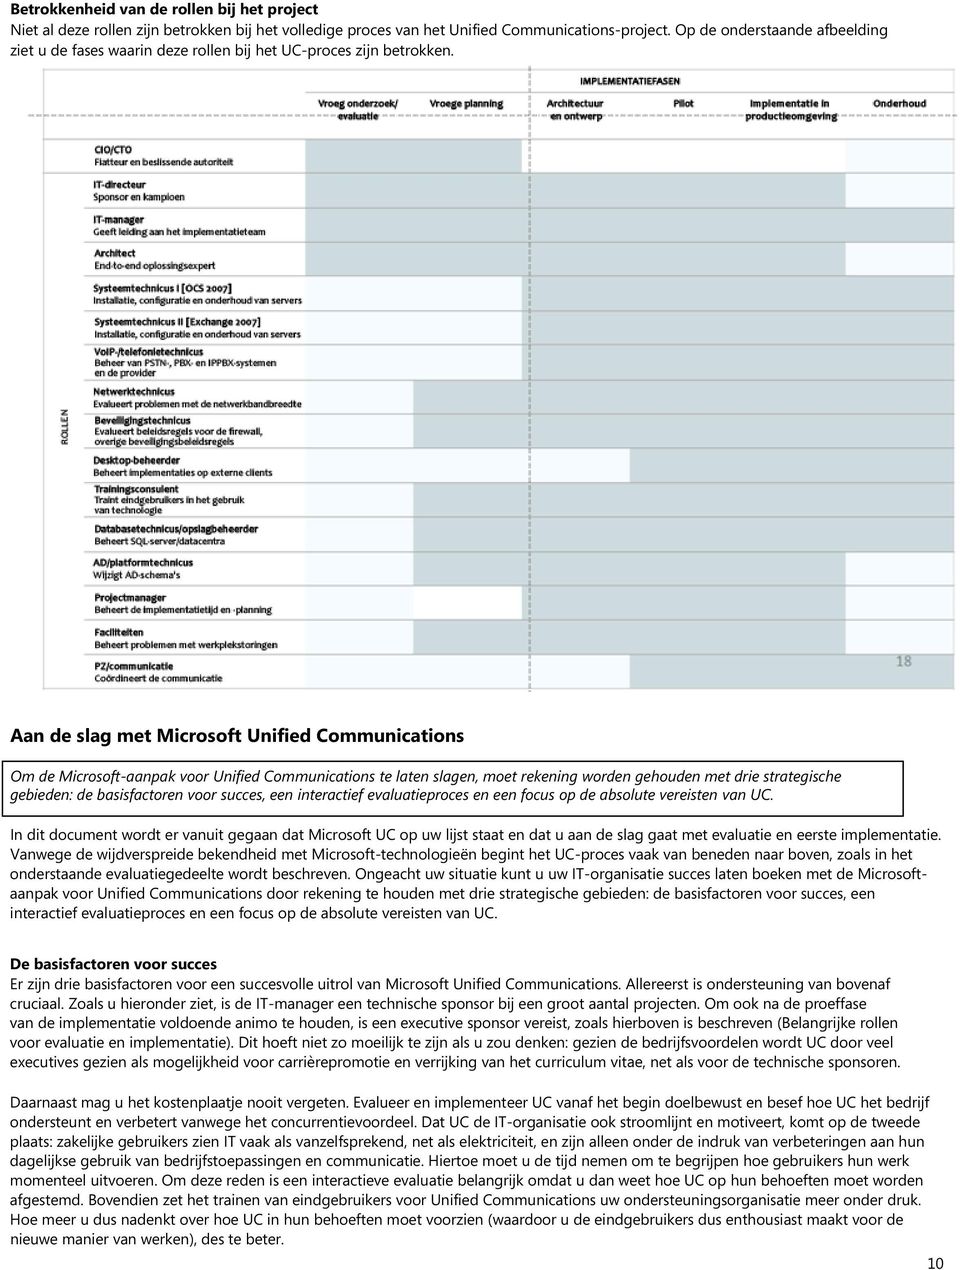 Aan de slag met Microsoft Unified Communications Om de Microsoft-aanpak voor Unified Communications te laten slagen, moet rekening worden gehouden met drie strategische gebieden: de basisfactoren